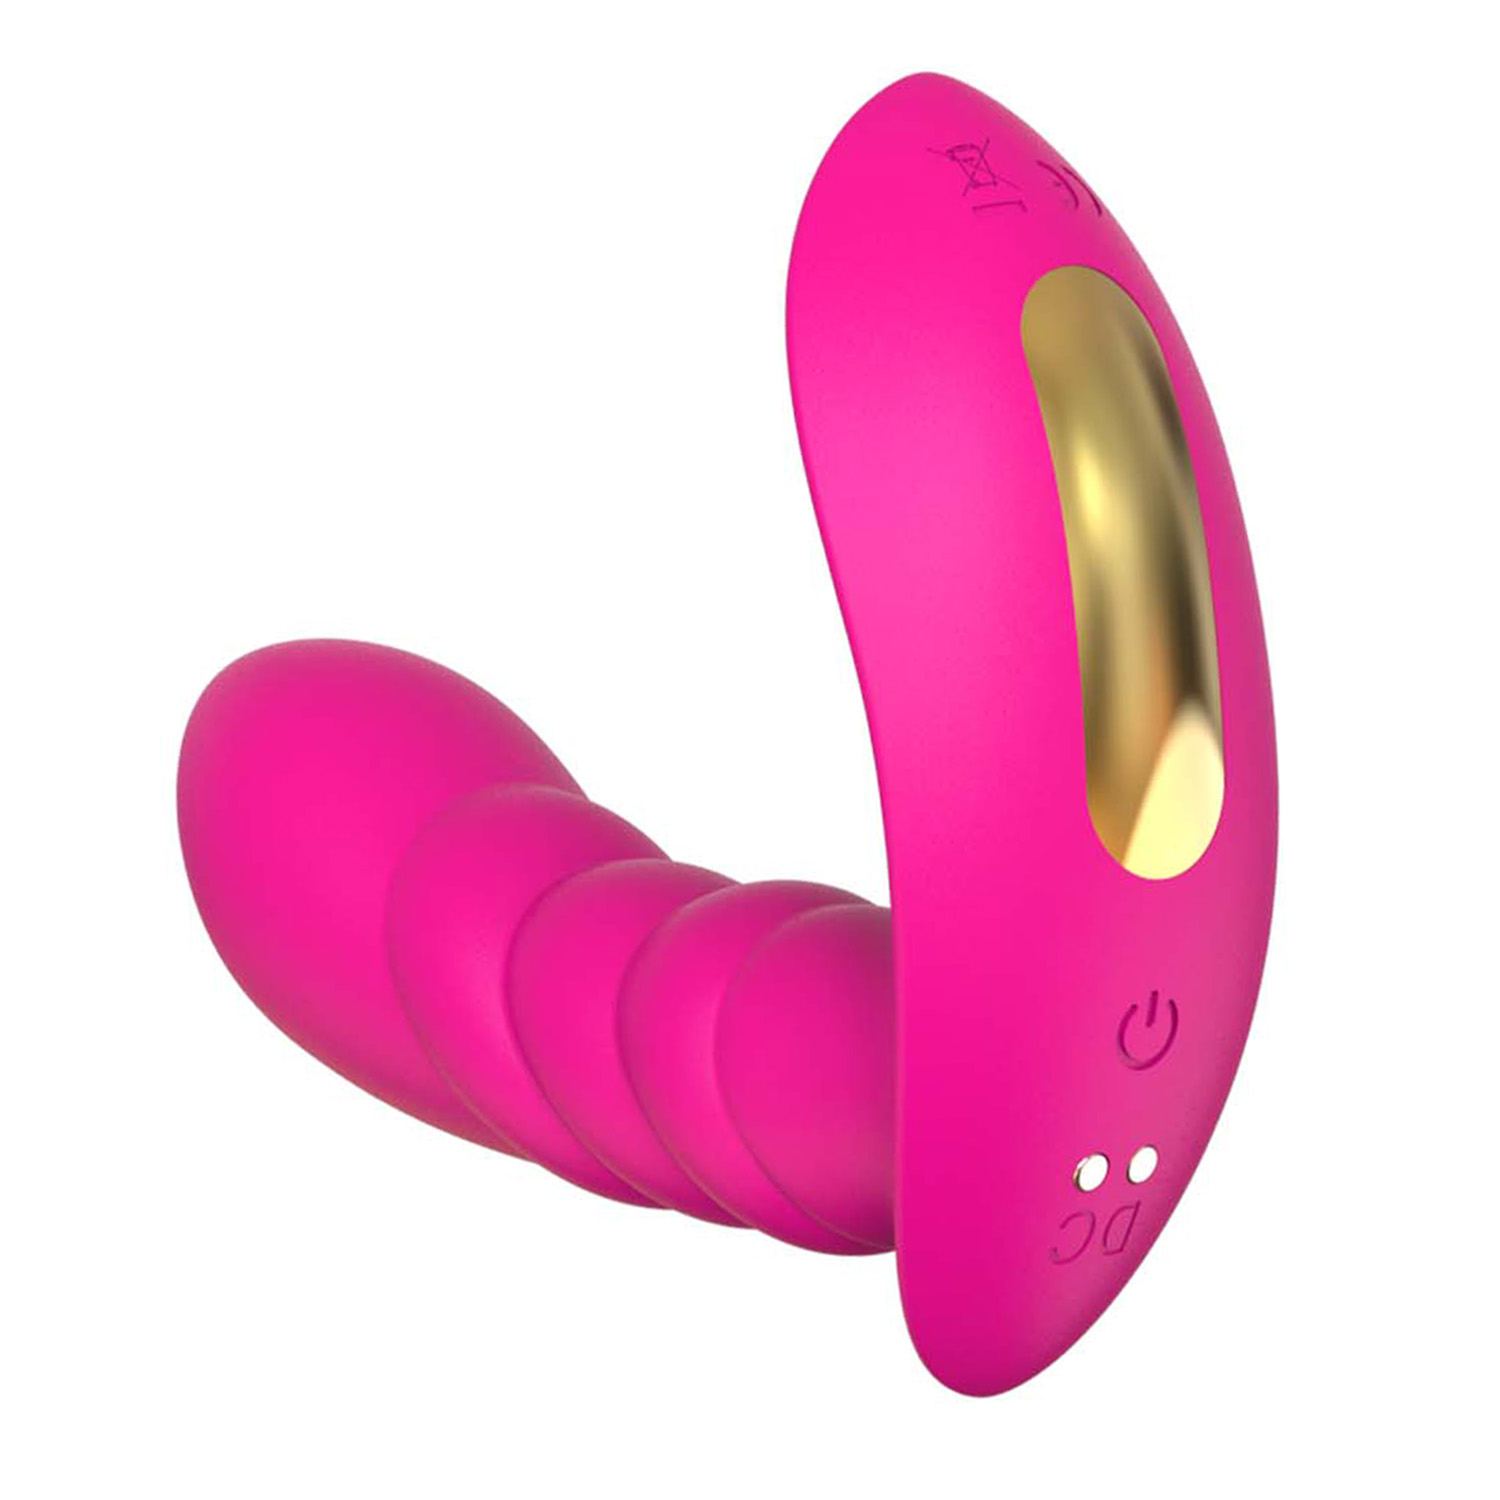 Draagbare vibrator met app roze